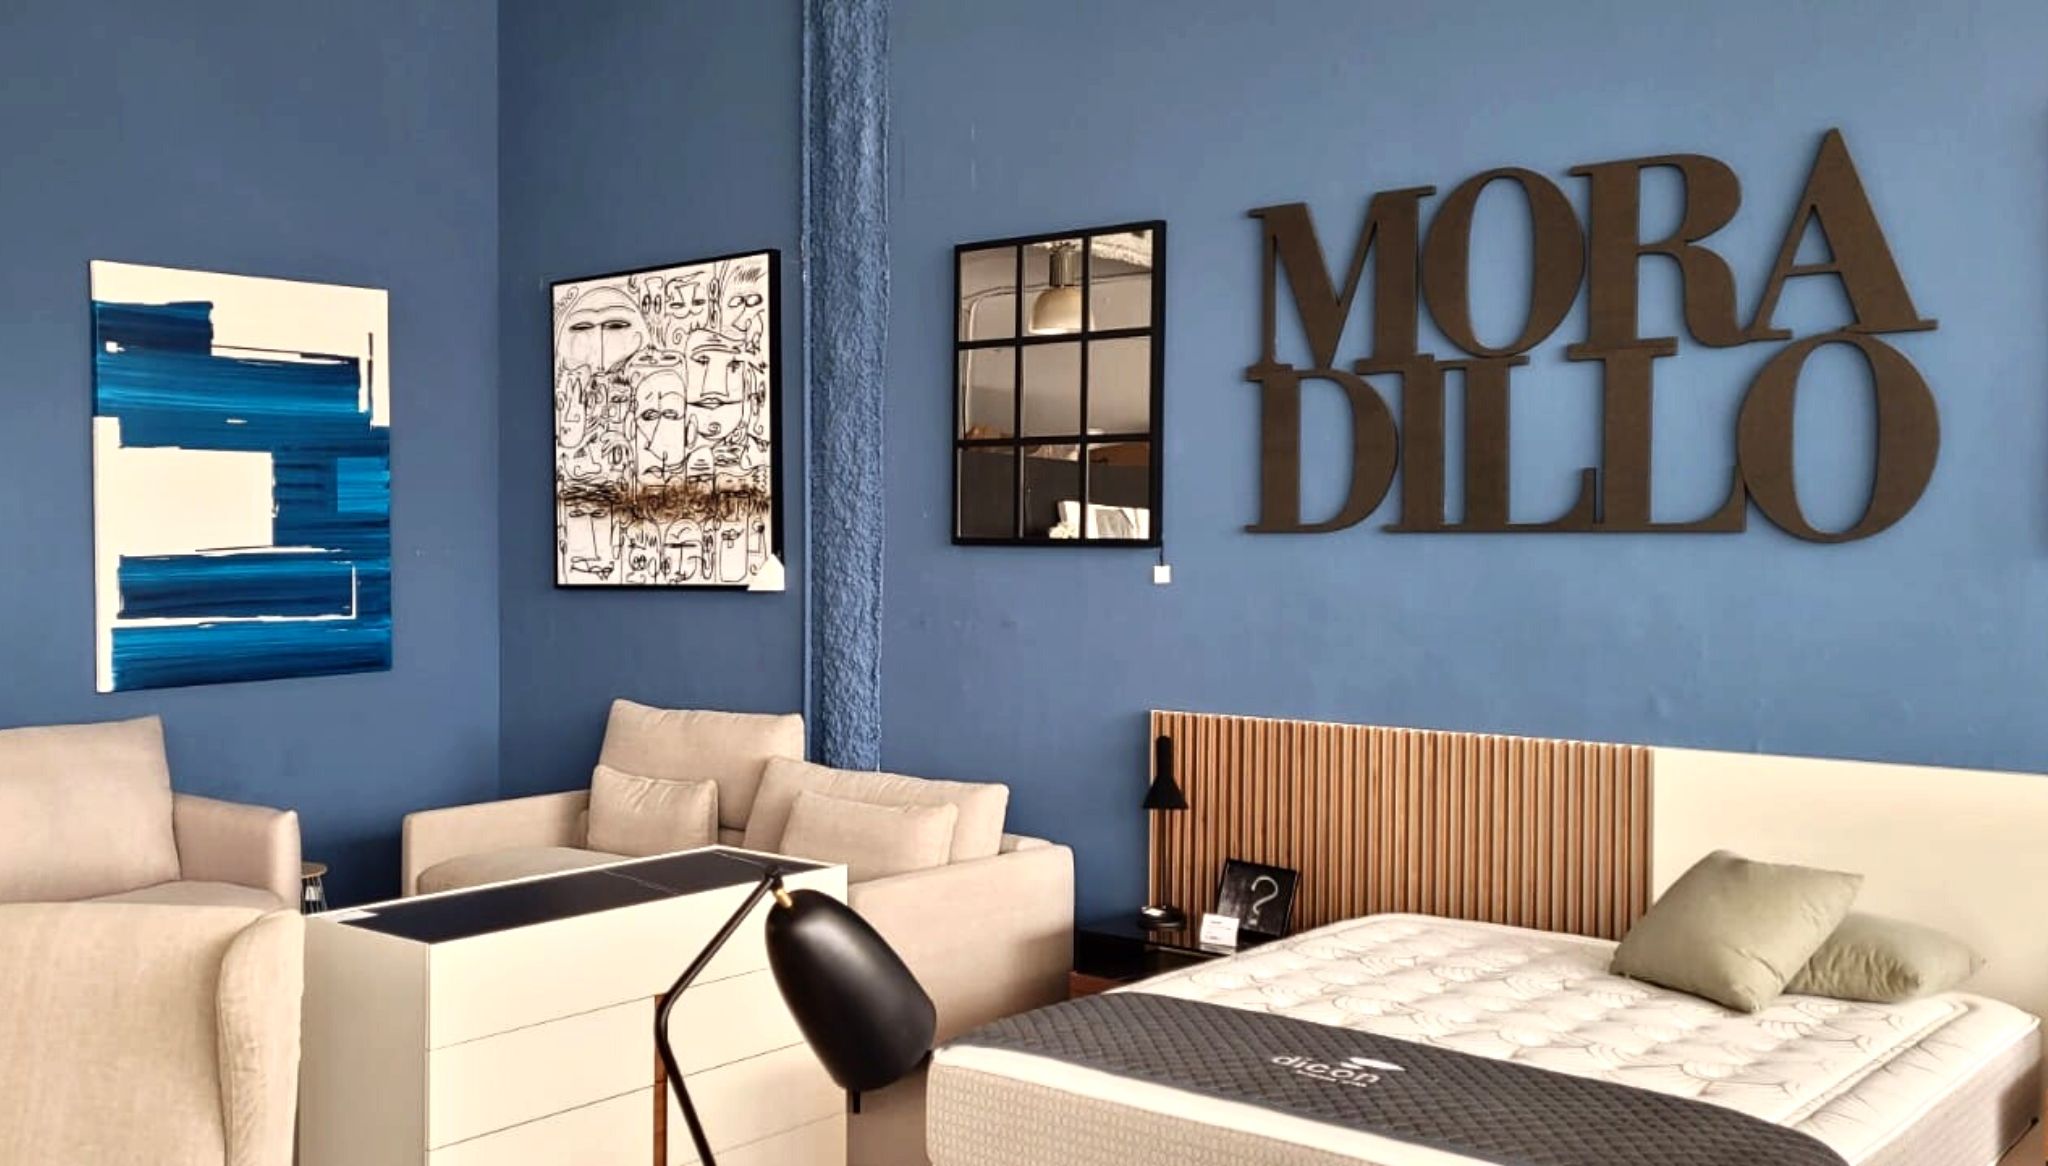 Trabajan con Moradillo, una gran firma dedicada al diseño y mobiliario